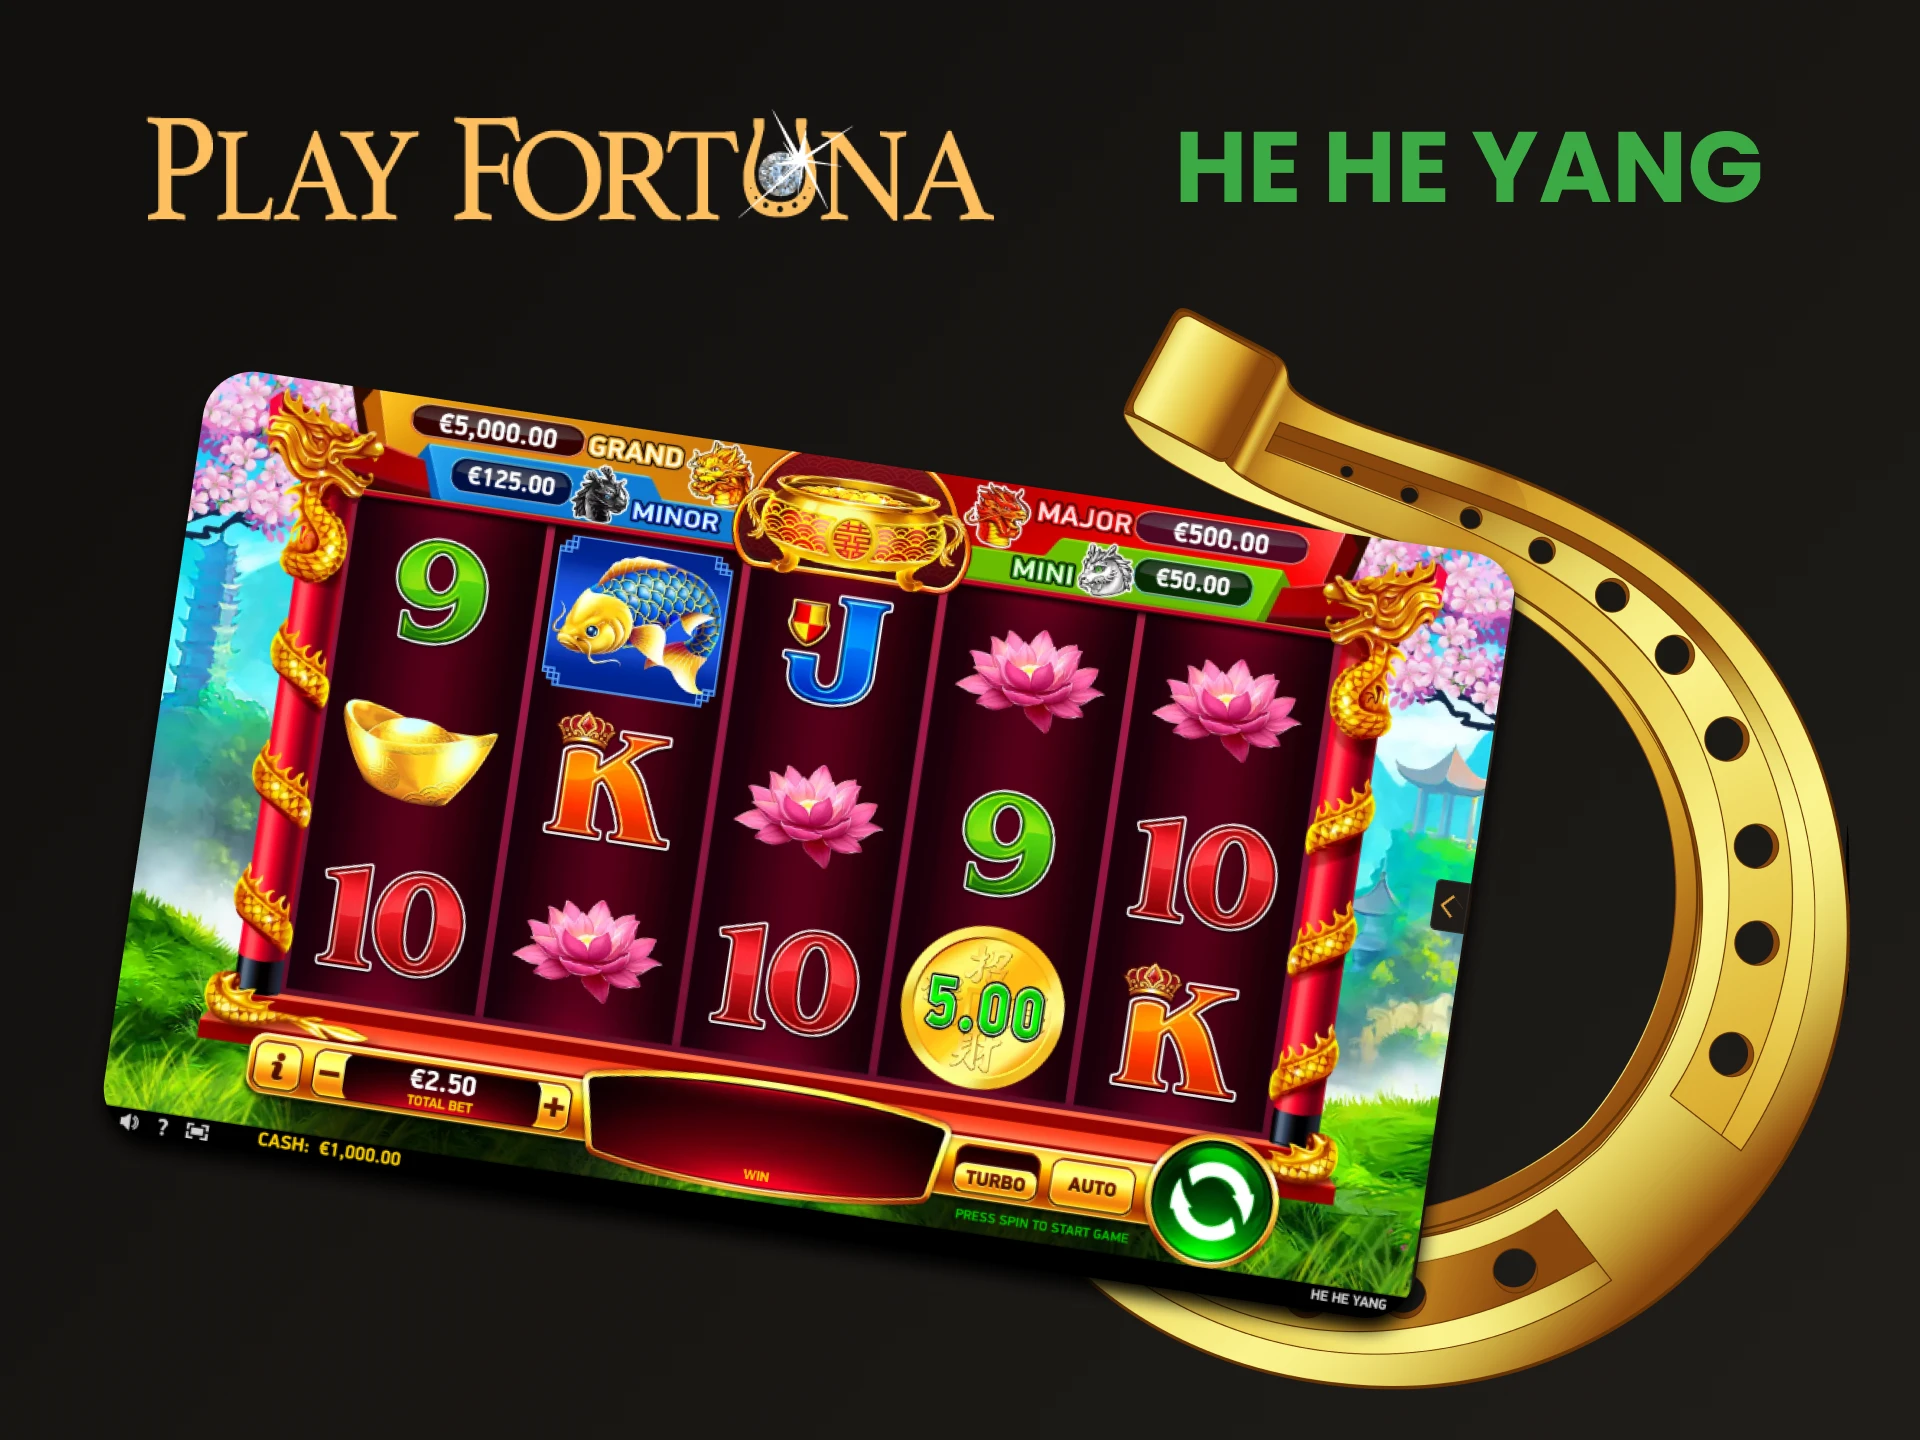 Para jogar slots no Play Fortuna, escolha He He Yang.